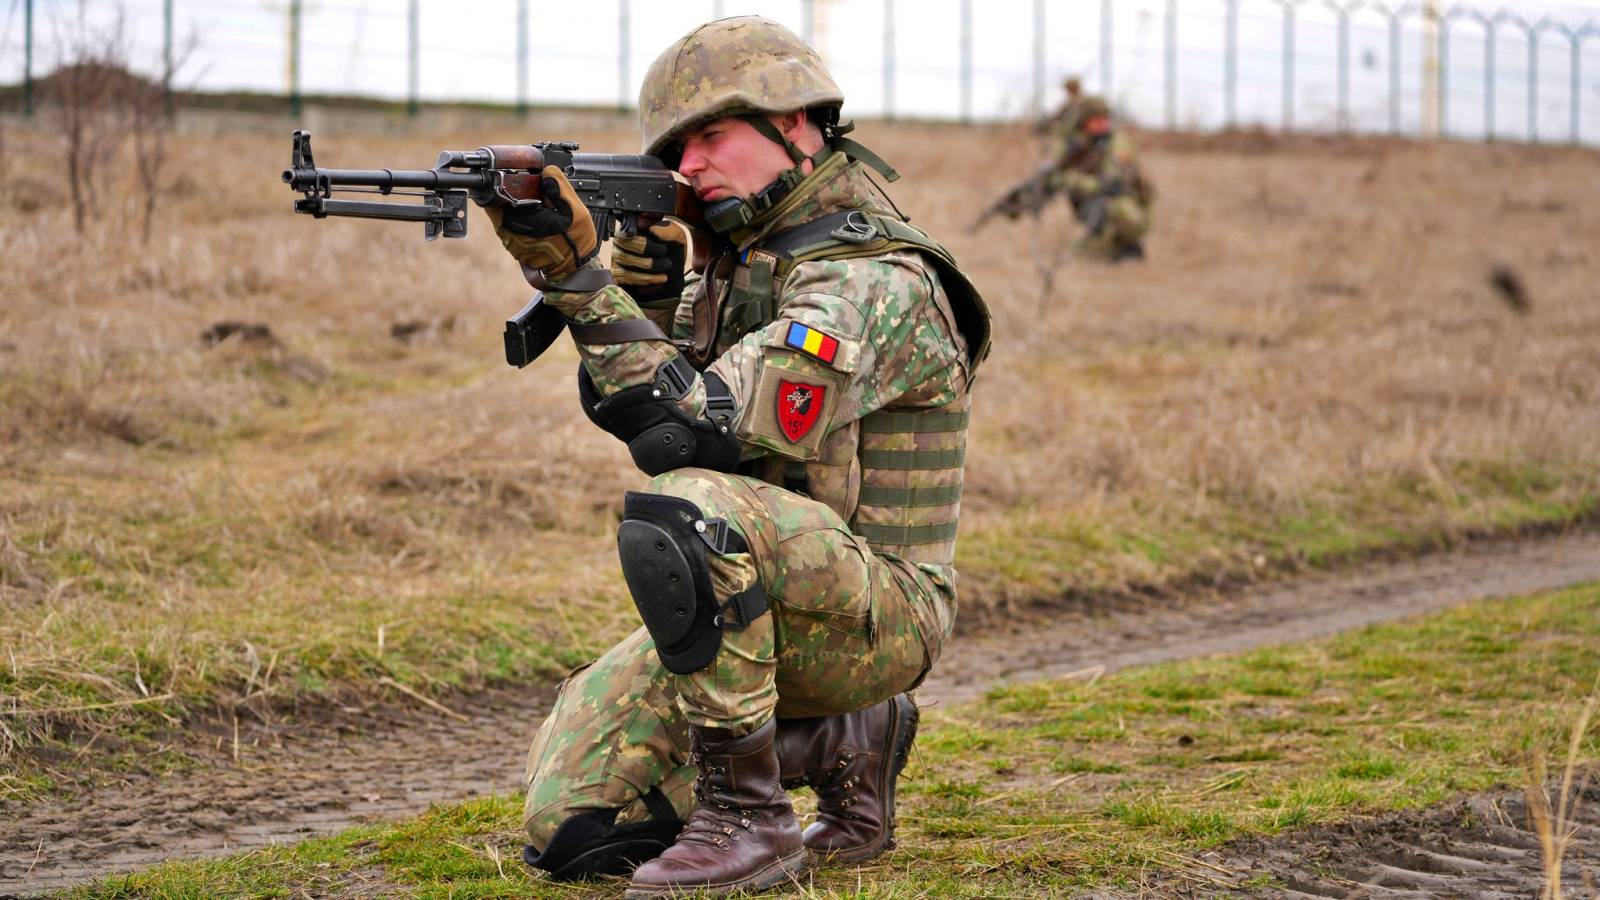 Annuncio ufficiale dell'esercito rumeno ULTIMO MOMENTO Misure militari adottate in piena guerra in Ucraina